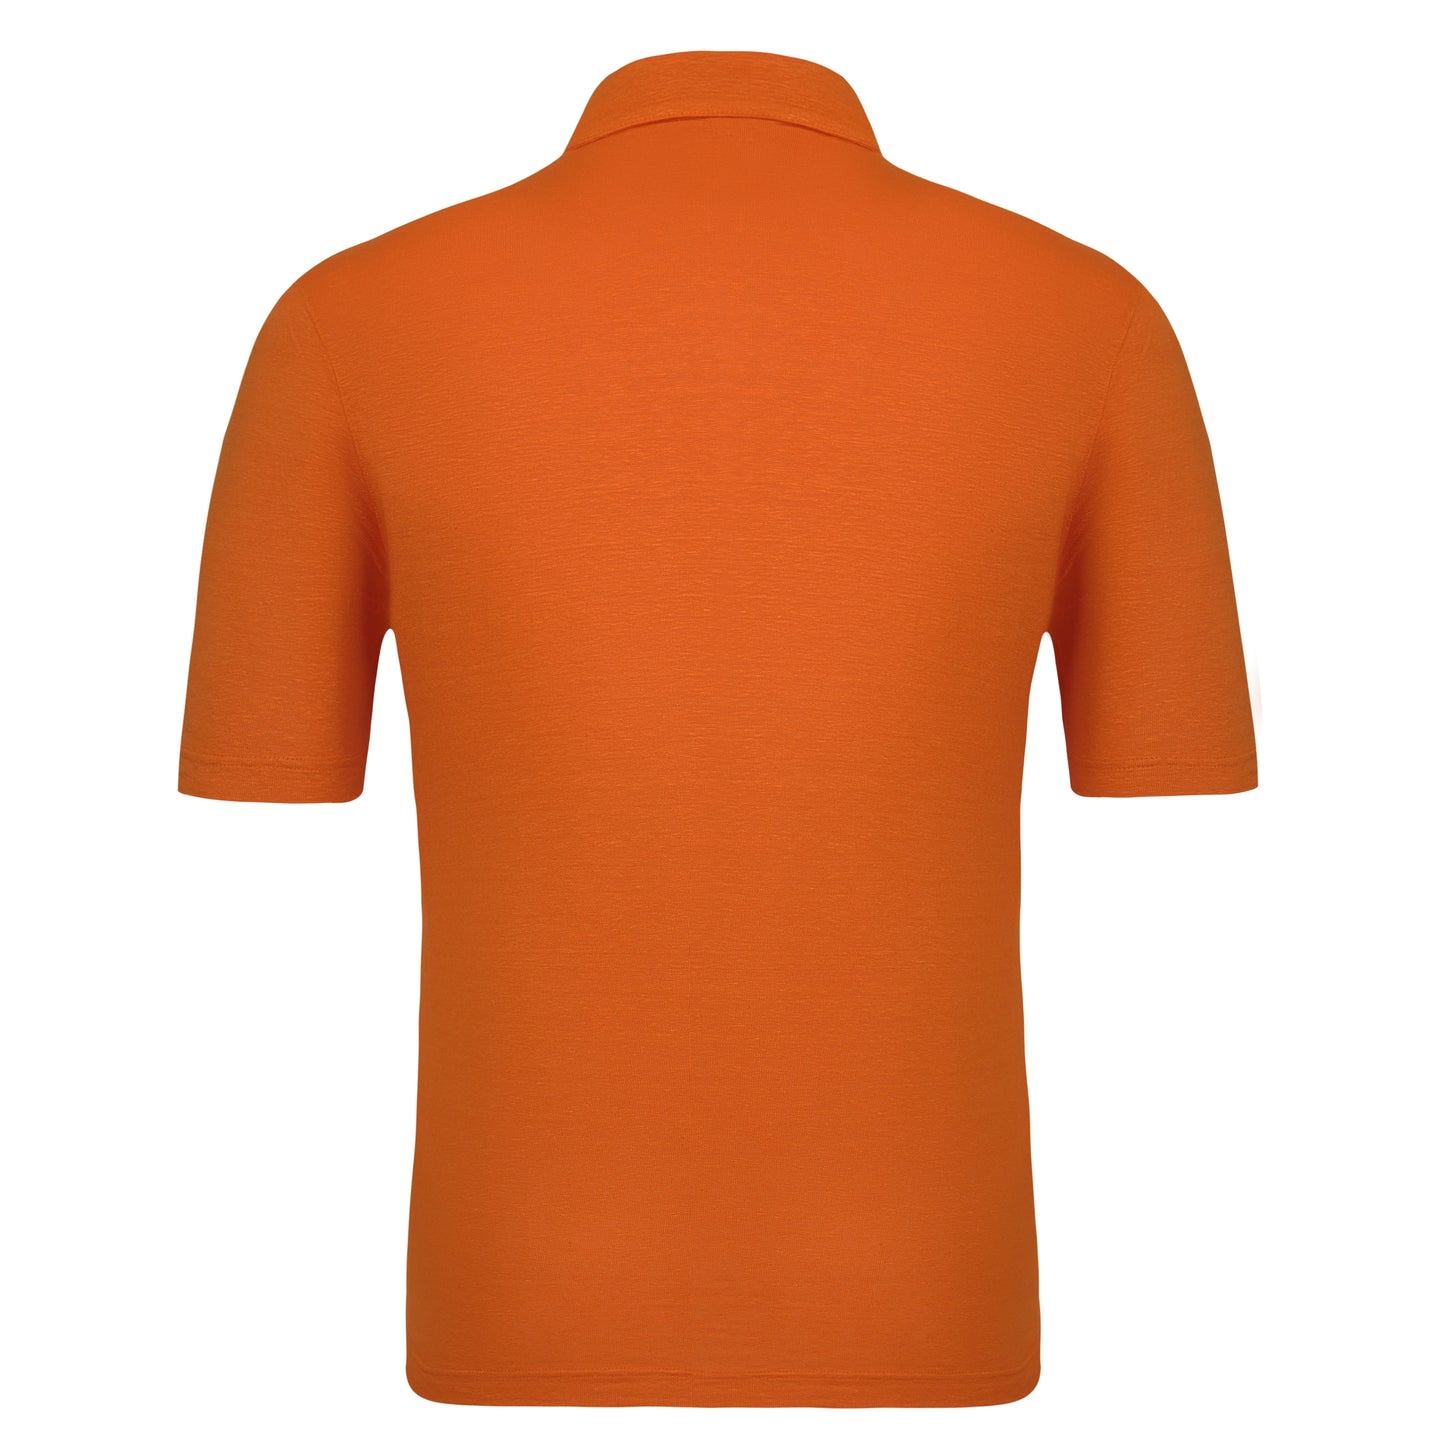 Two-Button Silk Polo Shirt in Bright Orange